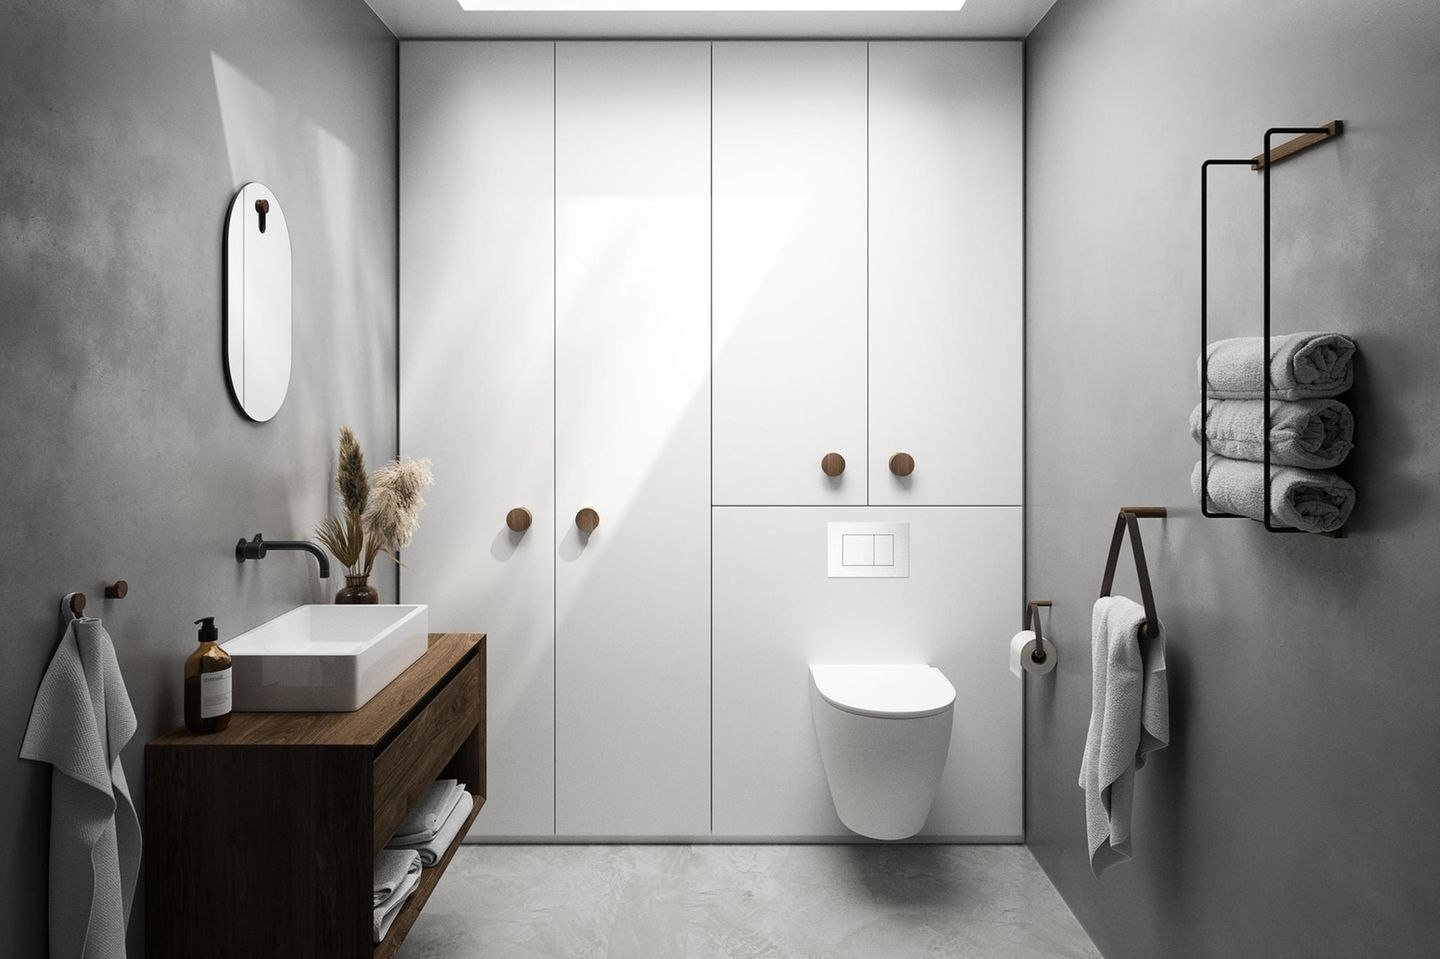 Stauraum Im Badezimmer Schaffen - [Schöner Wohnen] in Badezimmer Ideen Stauraum